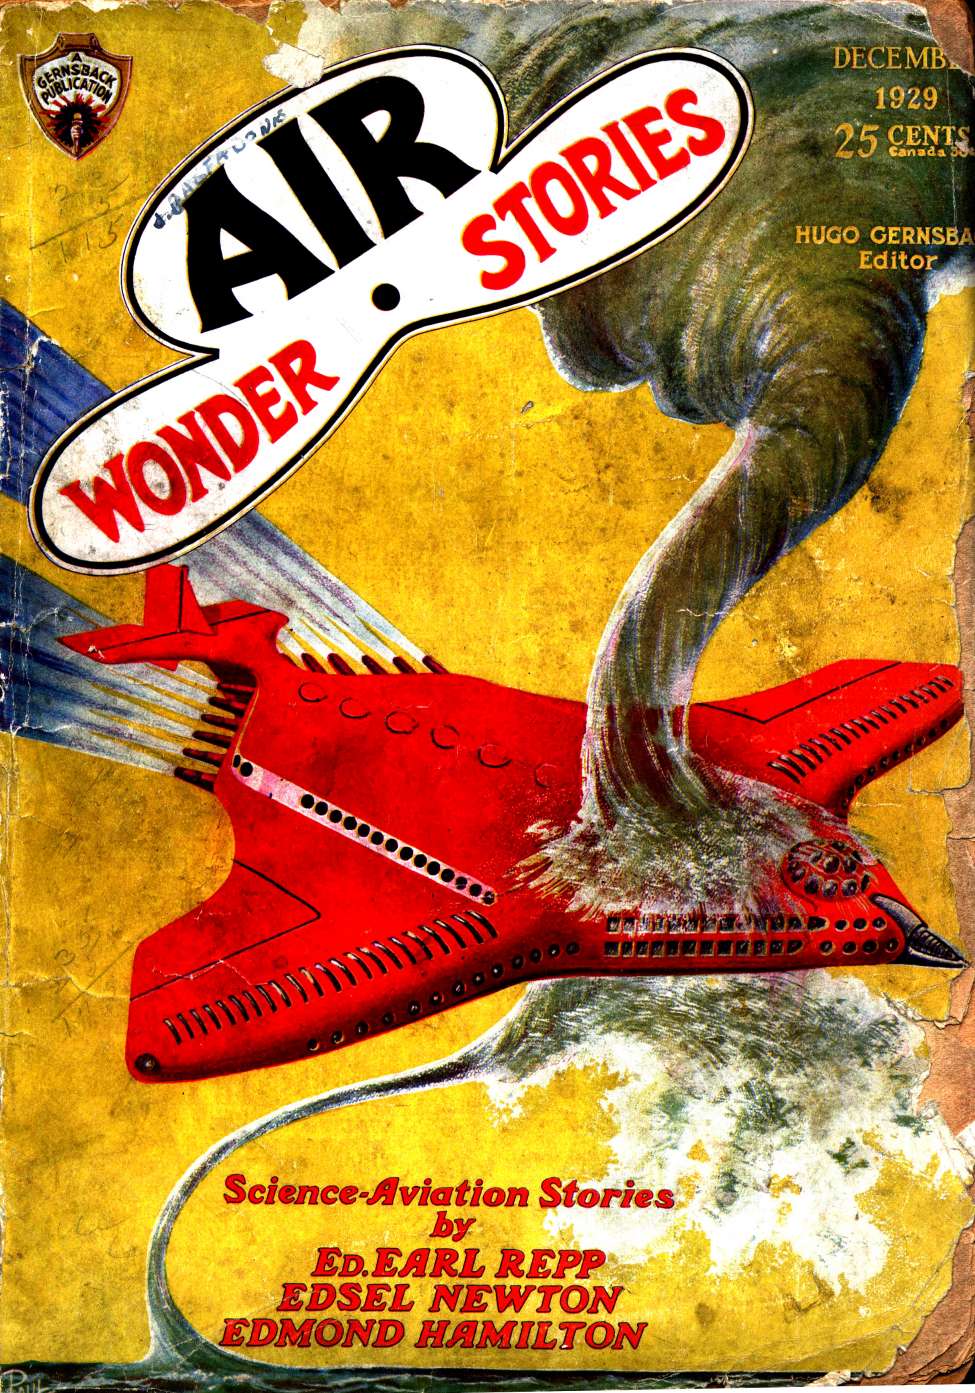 Air Wonder stories (журнал). Эрл rep. The Return of the Air Master, Air Wonder stories March 1930. Air wonder